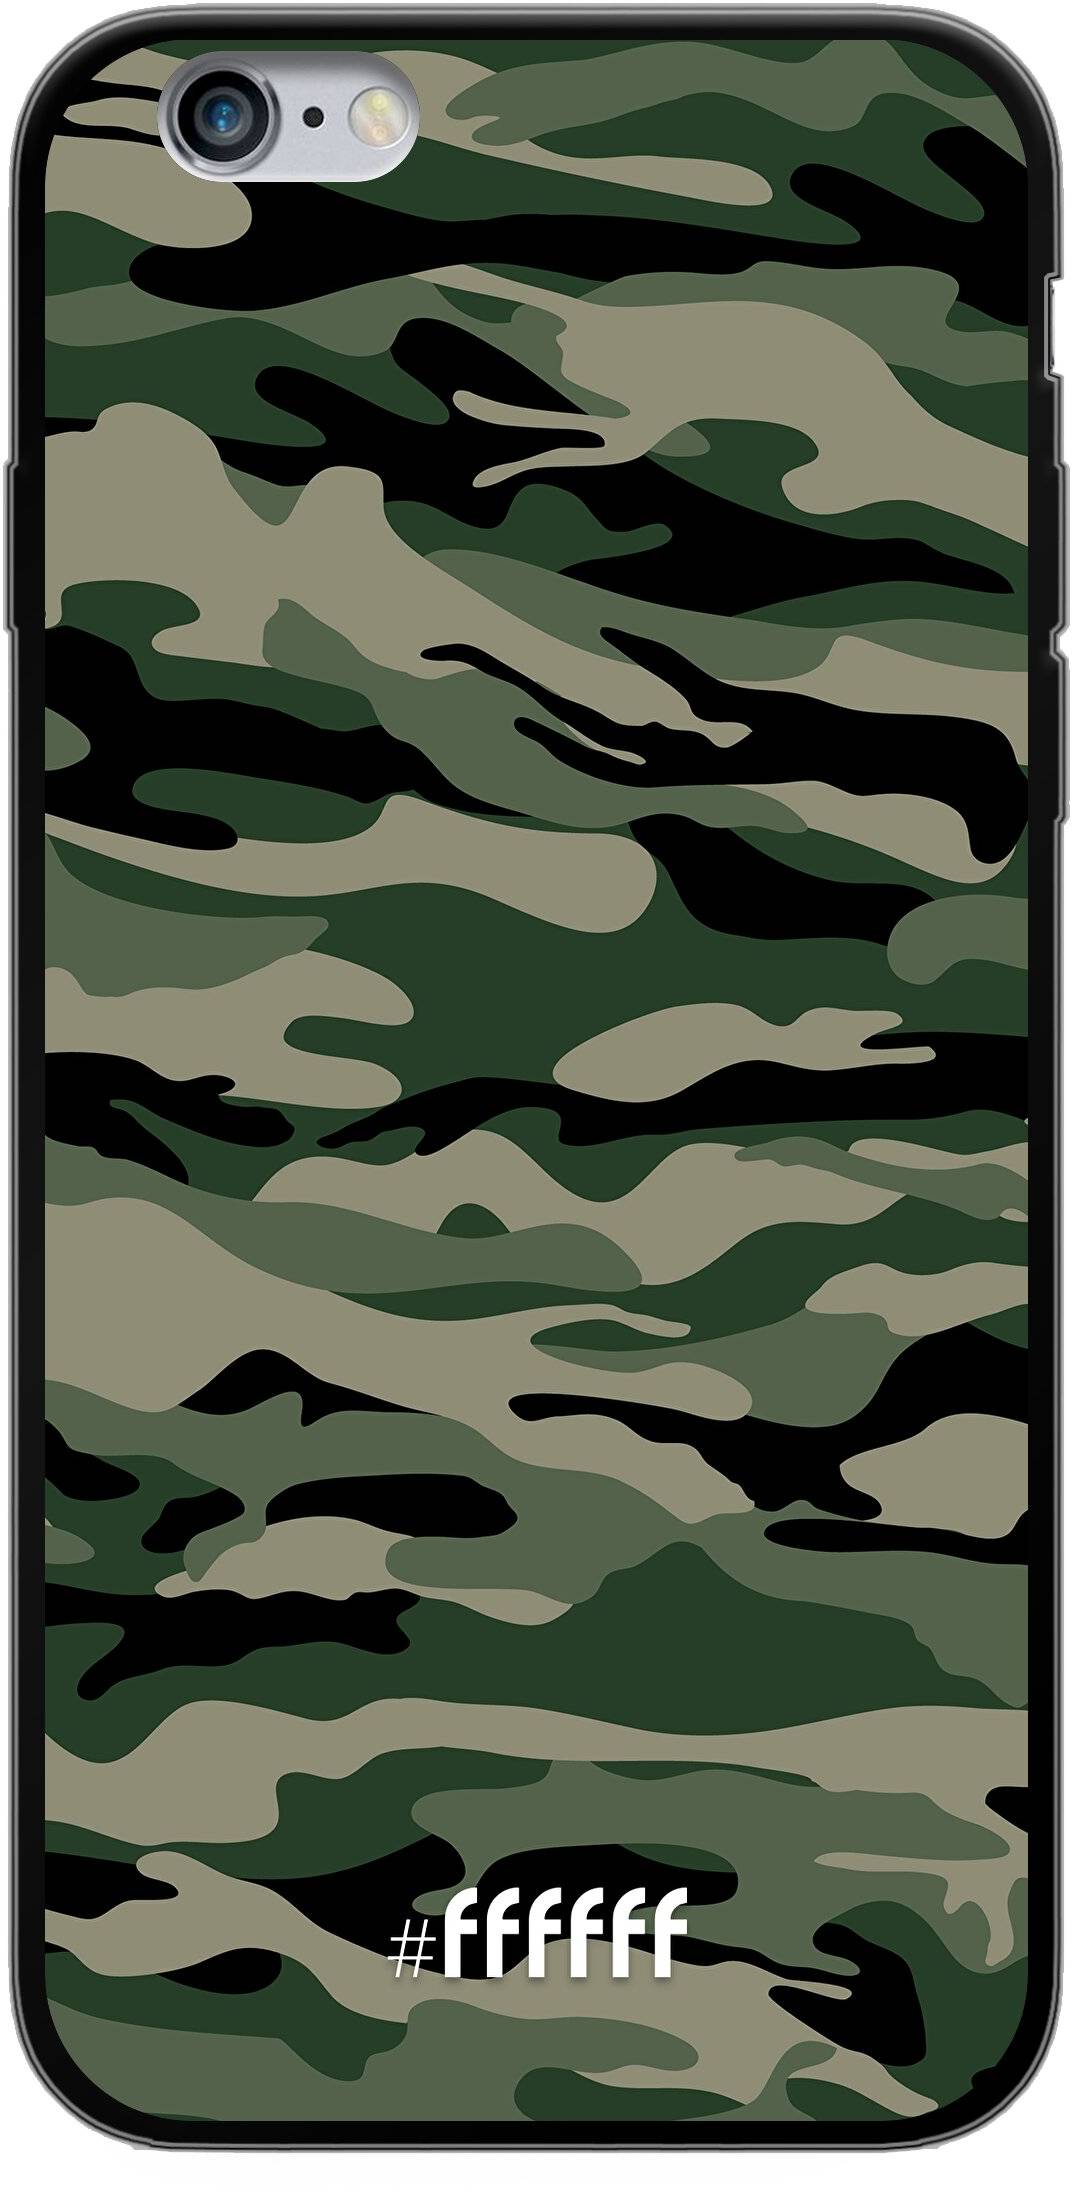 Woodland Camouflage iPhone 6